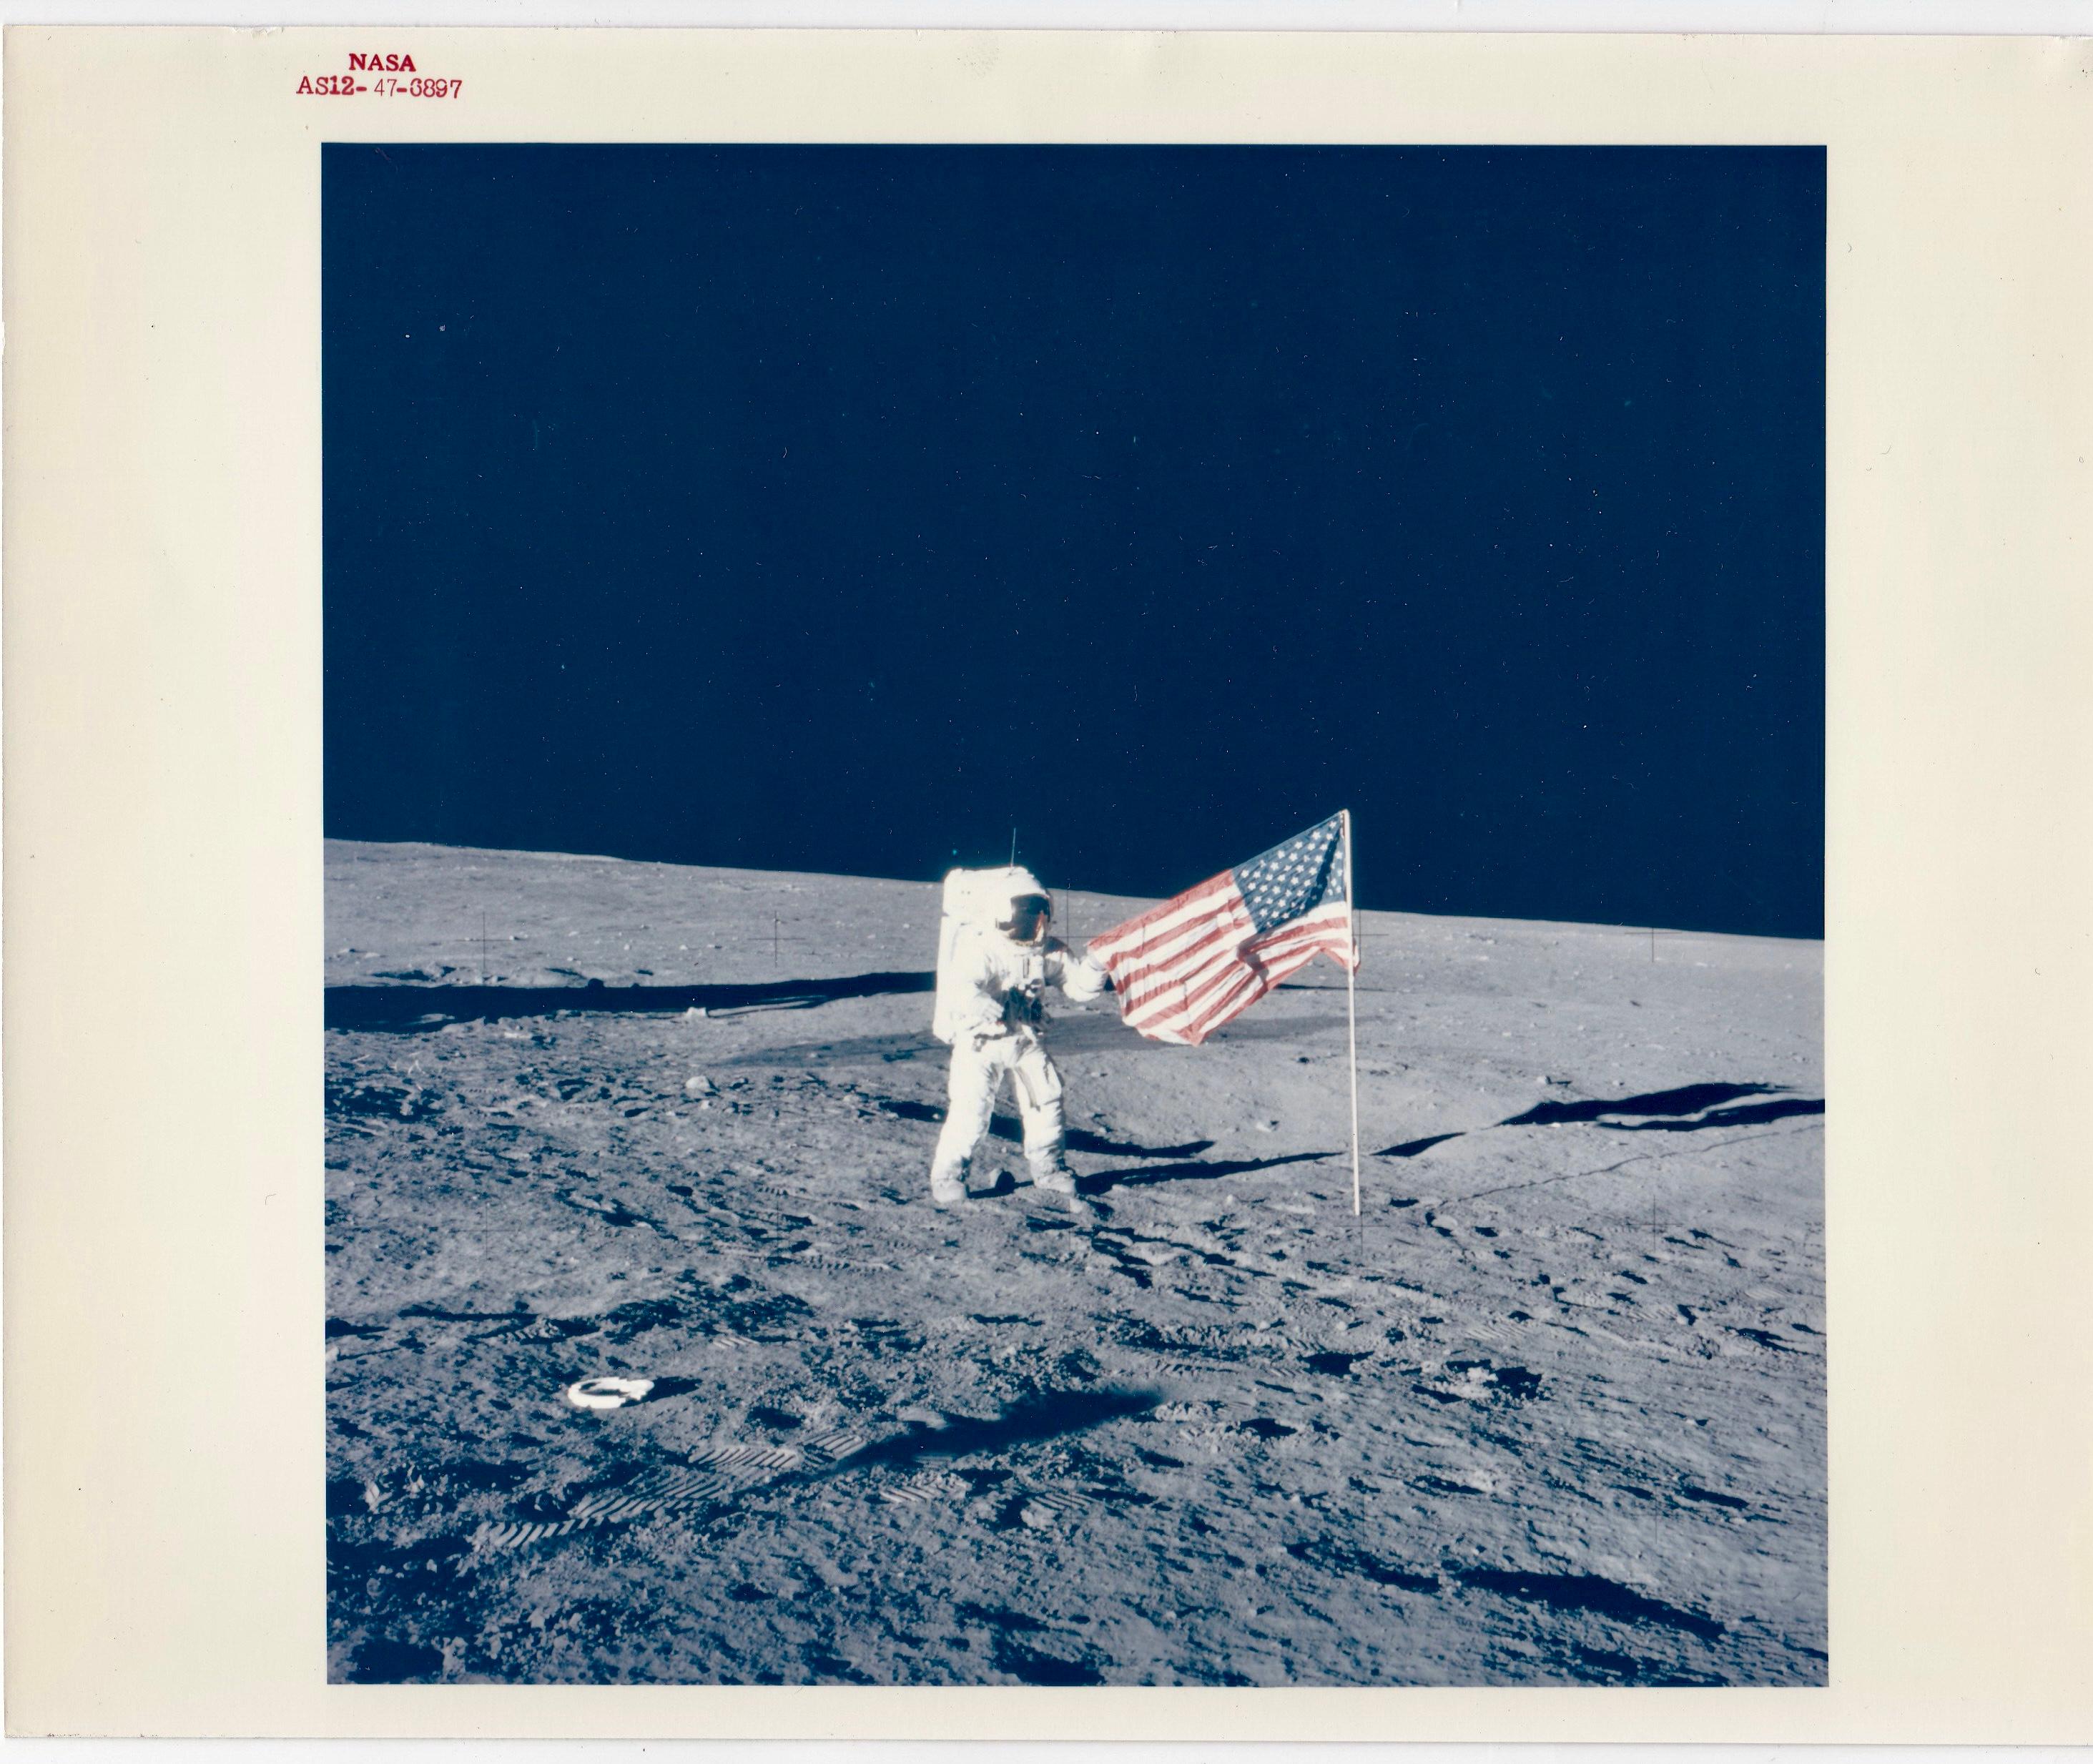 Der NASA-Astronaut und Kommandant der Apollo 12, Pete Conrad JR, wird von seinem Kollegen Alan Bean fotografiert und posiert mit der amerikanischen Flagge, nachdem er und Bean sie auf dem Mond aufgestellt haben.

Es handelt sich um ein 8" x 10"